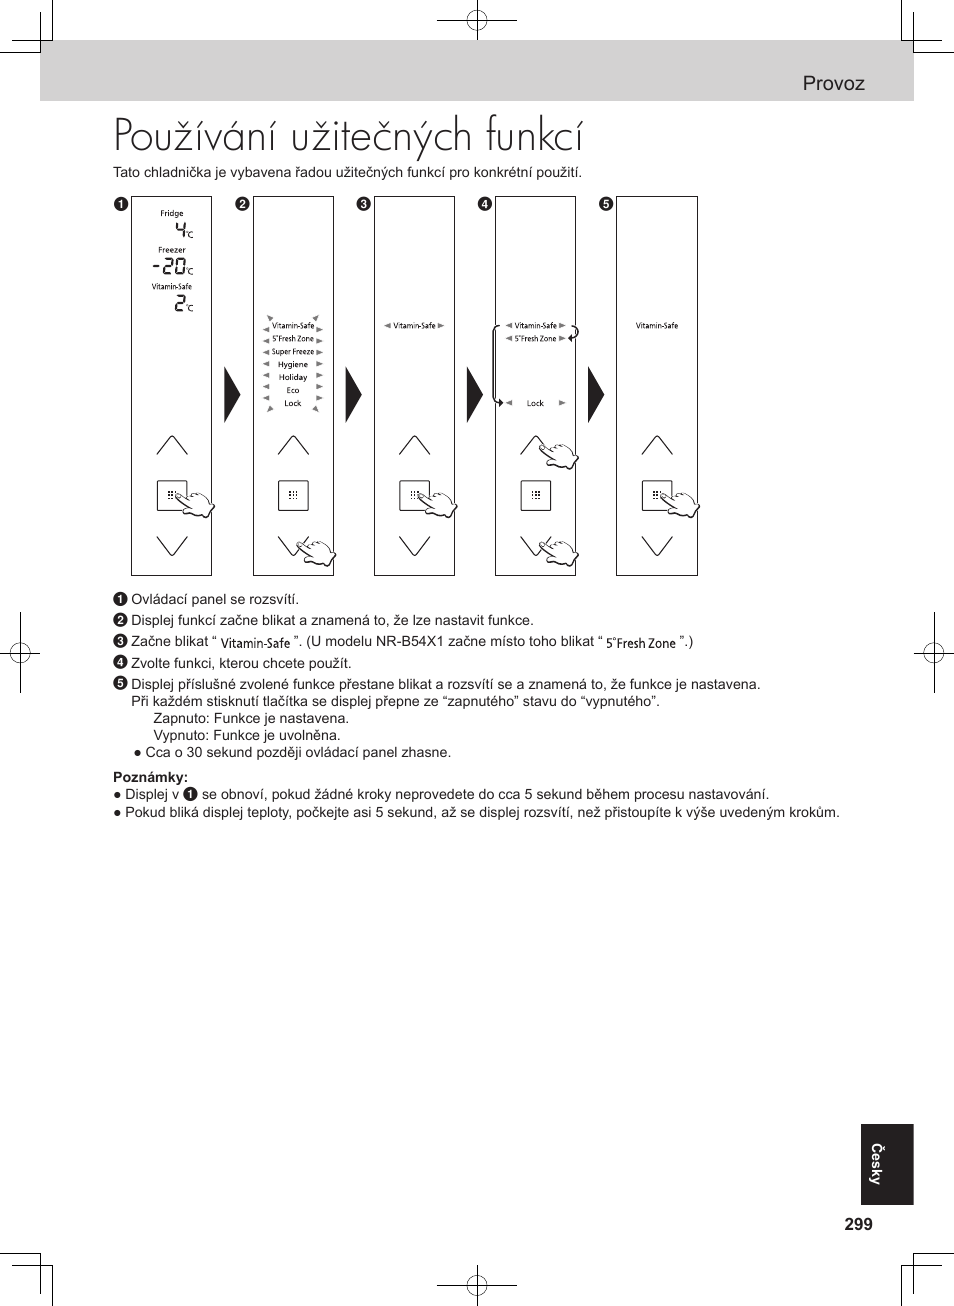 Používání užitečných funkcí, Provoz | Panasonic NRB53V1 Manual del usuario | Página 244 / 261